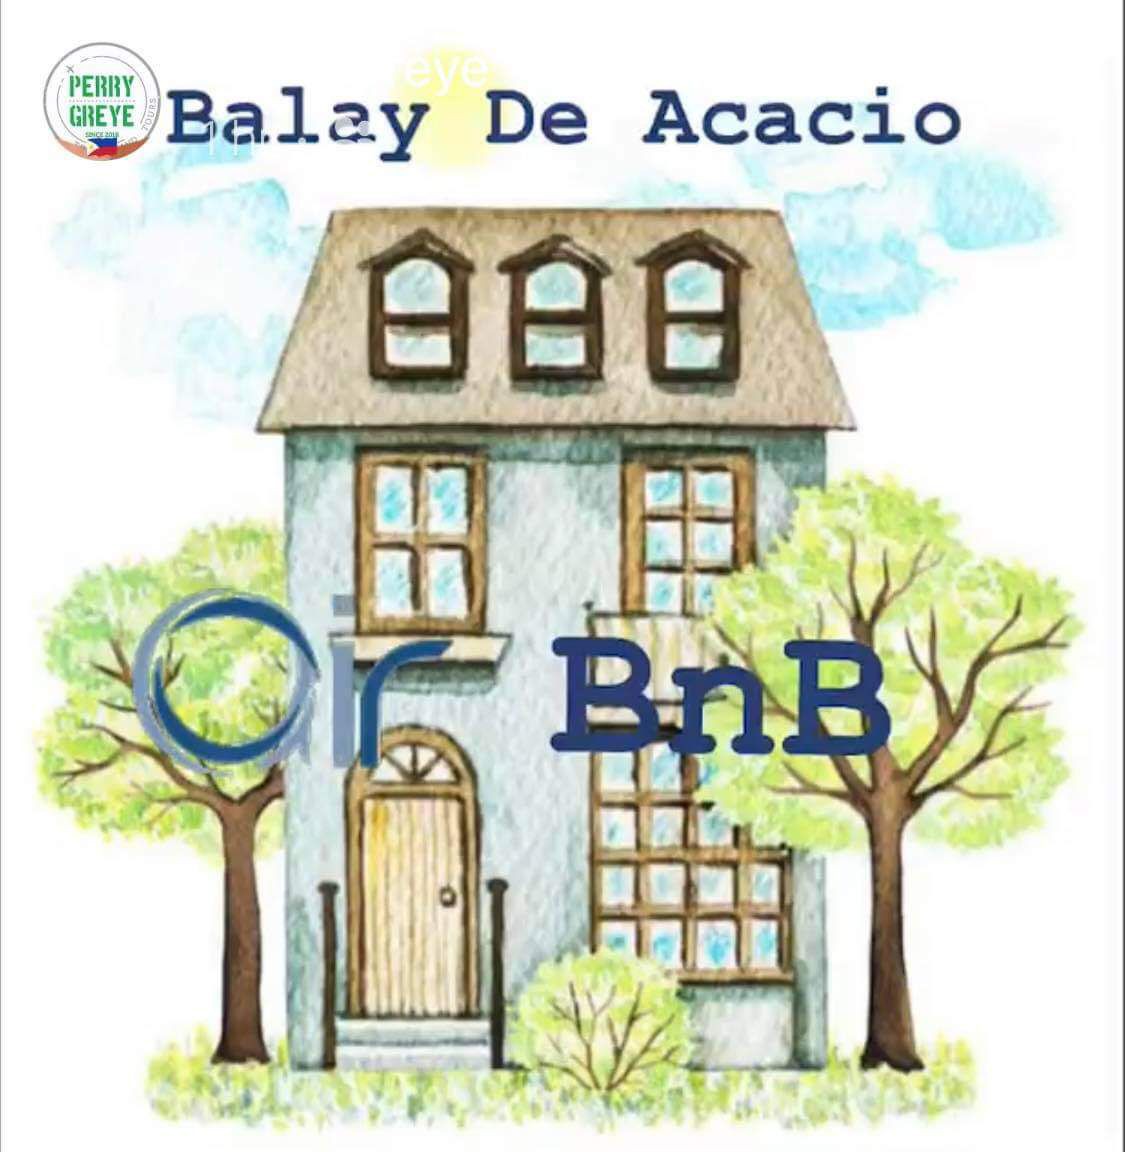 Old House at Balay De Acacio